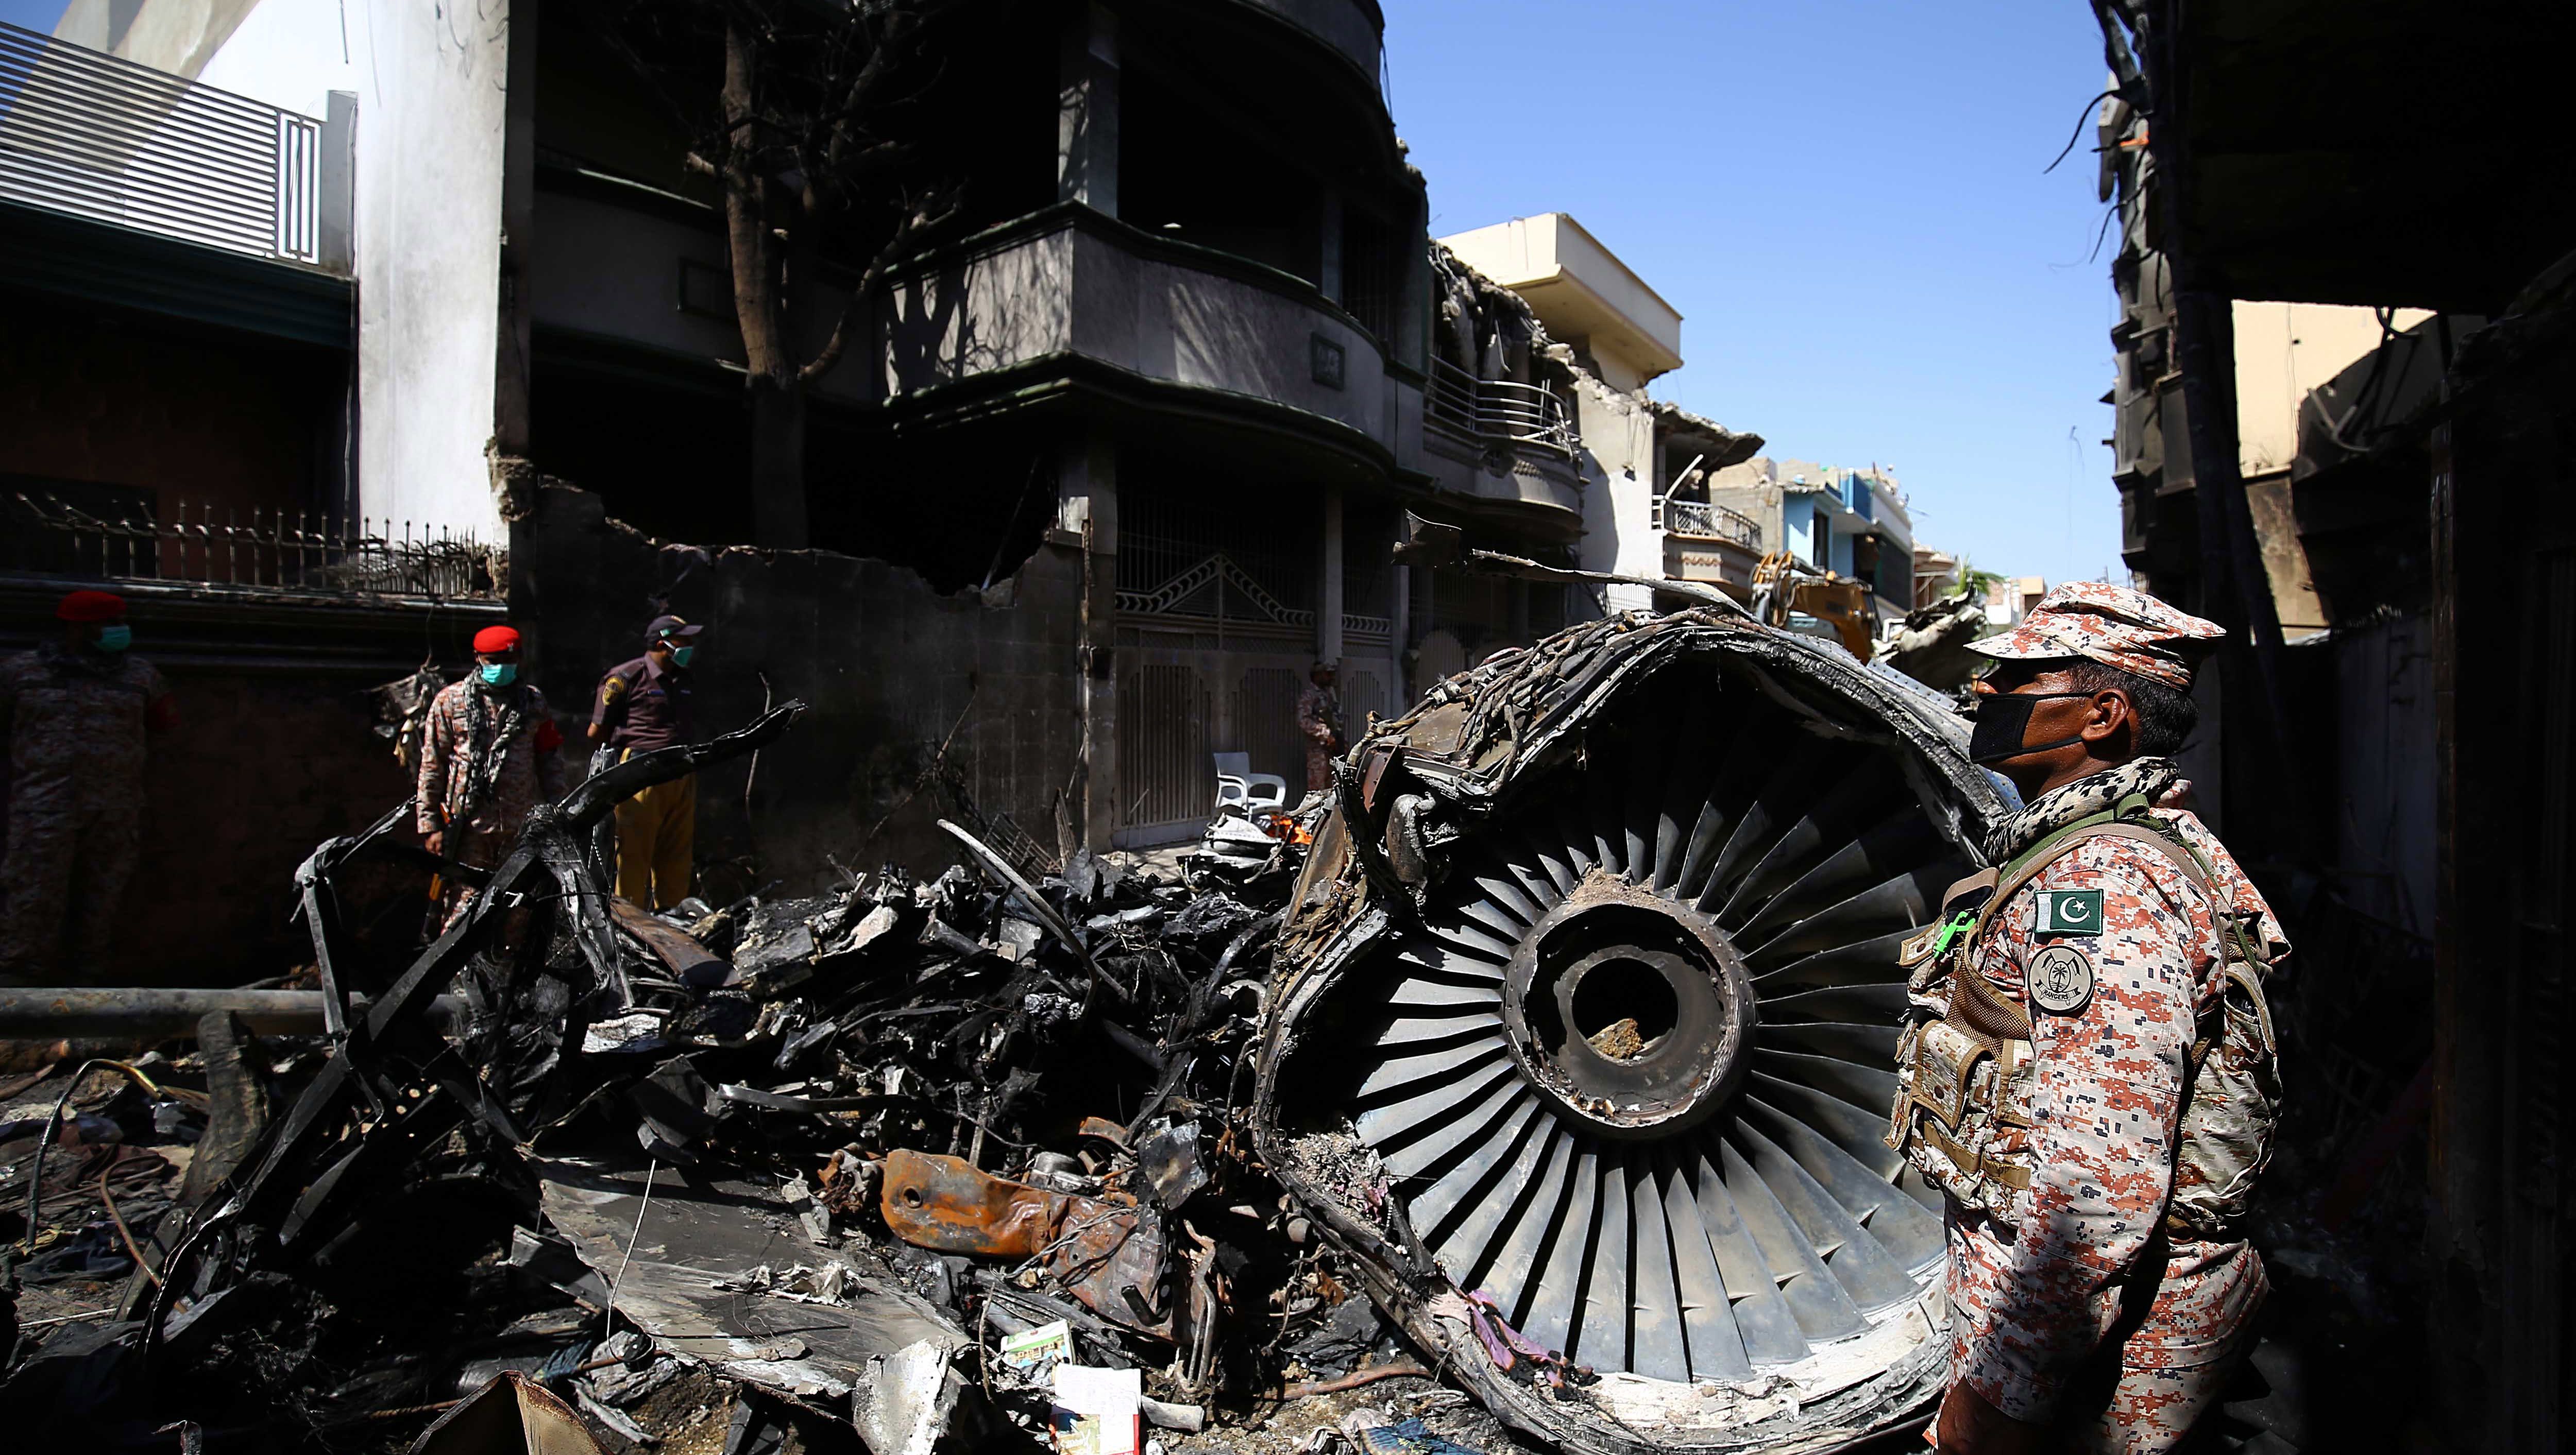 Megdöbbentő képek készültek a pakisztáni légitragédia helyszínéről